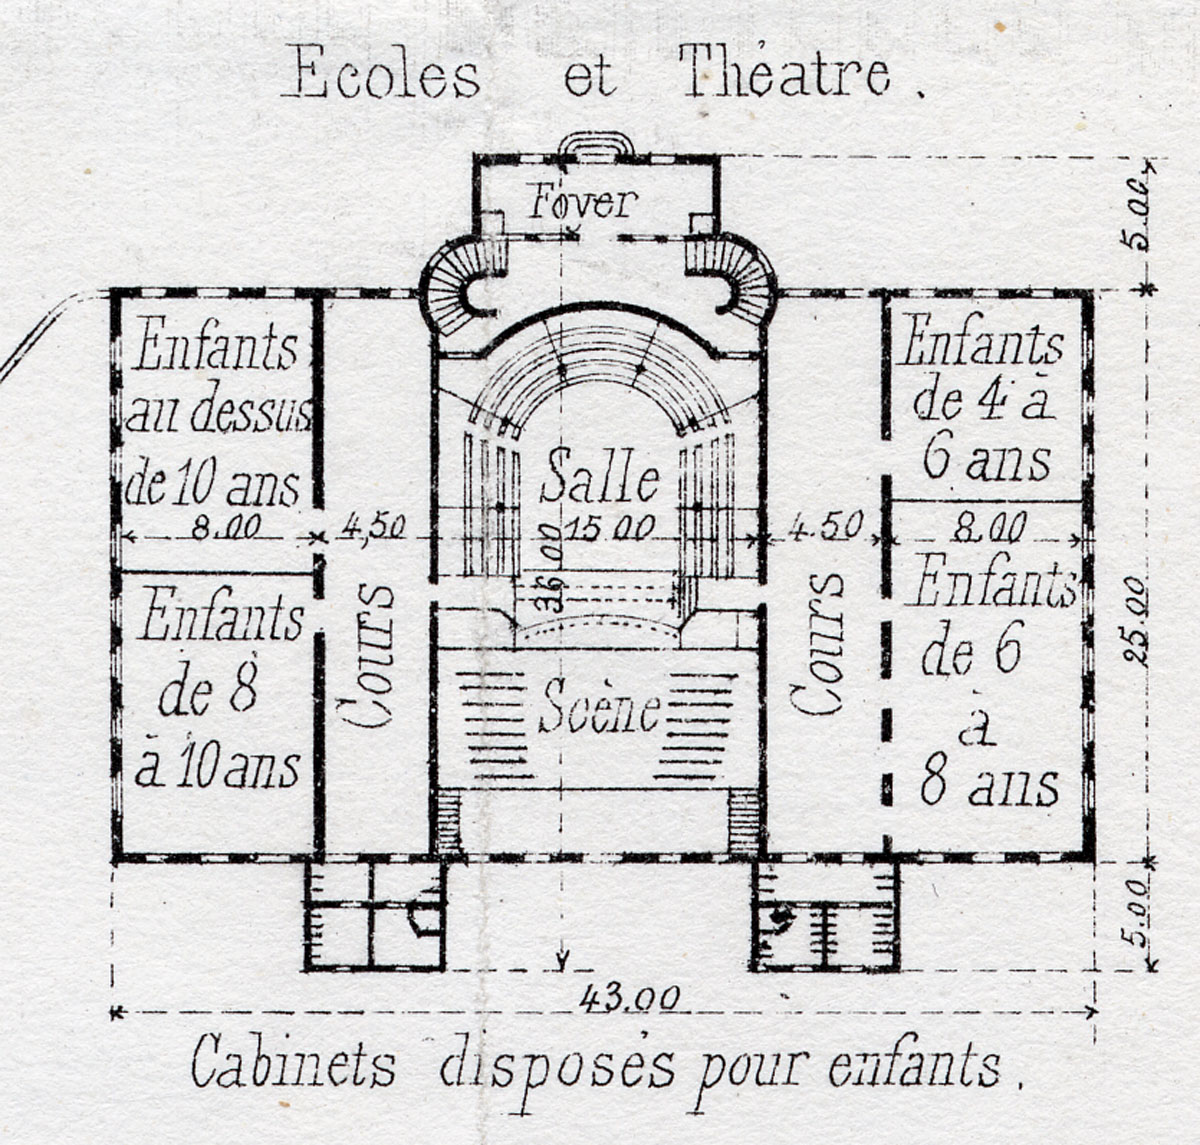 Plan du théâtre et des écoles en 1880, extrait d’une planche imprimée par Thierr